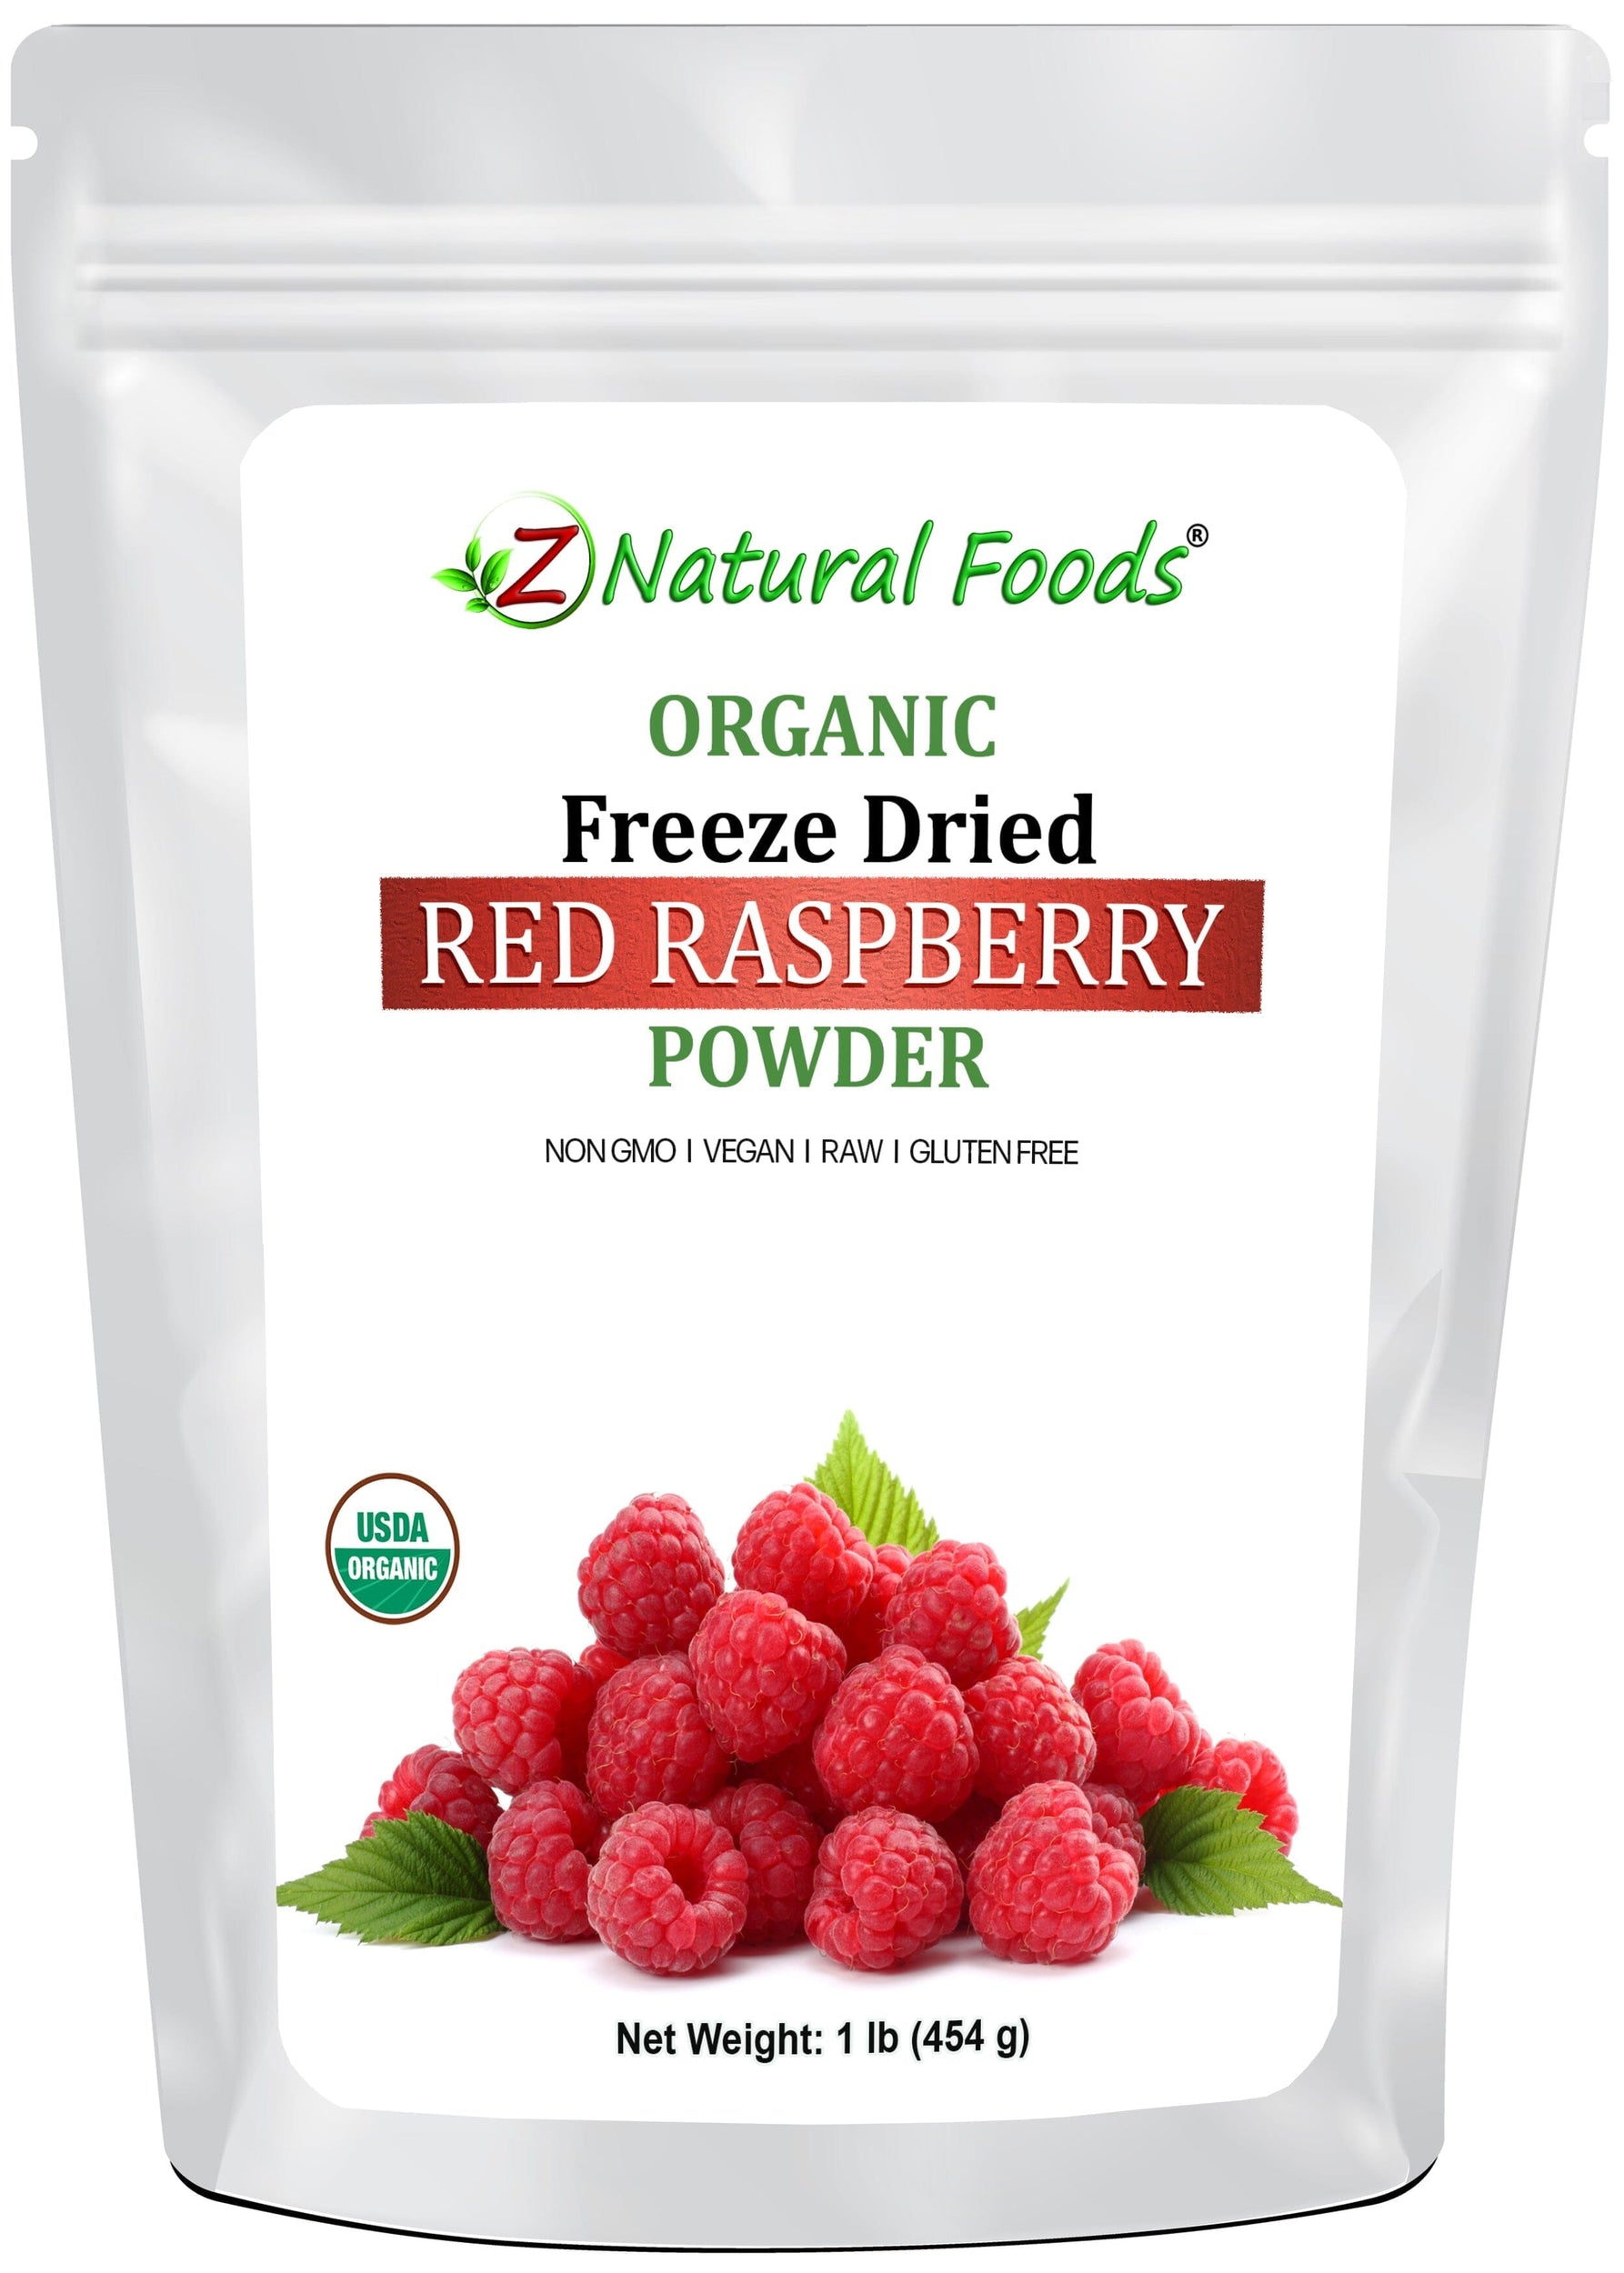 Red Raspberry Powder - Organic Freeze Dried